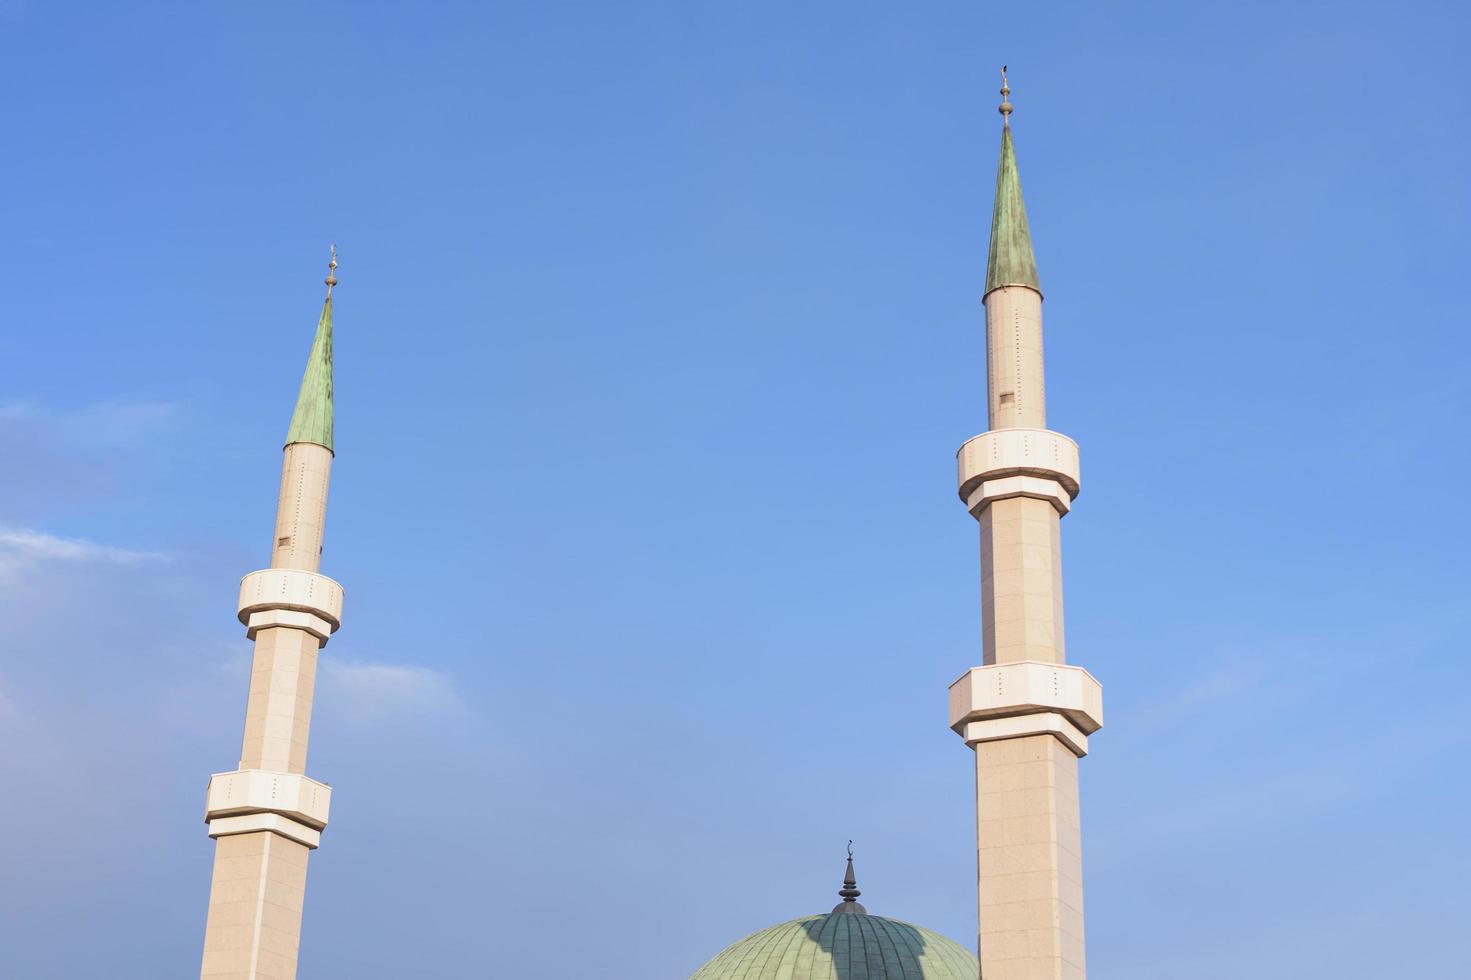 hermosa mezquita. lugar de culto musulmán foto